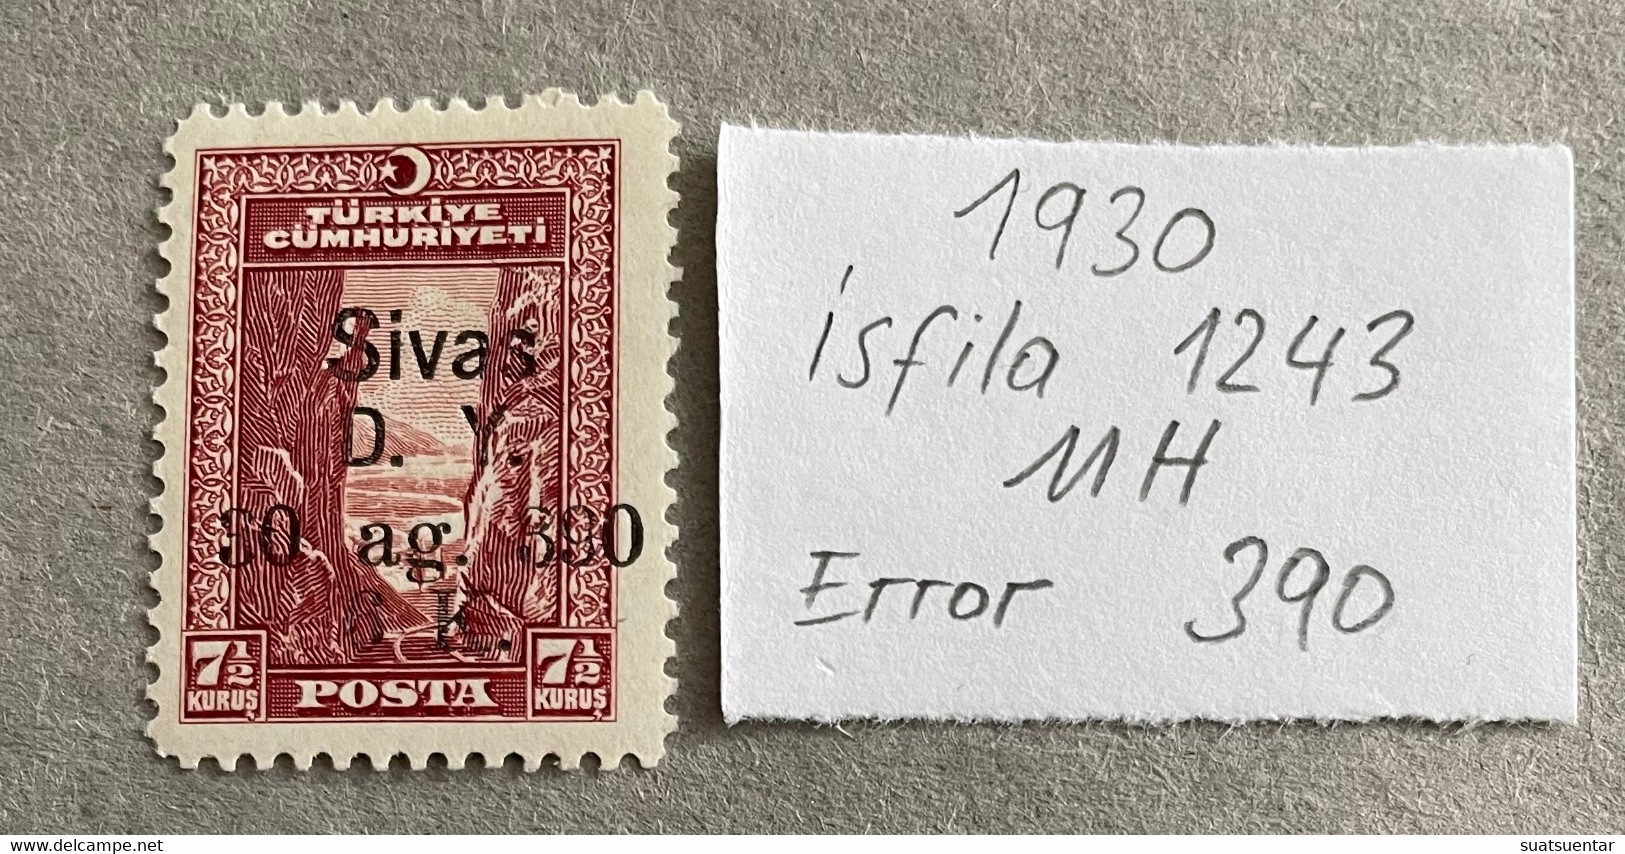 1930 Sivas-Ankara Railway Stamps Error   390 MH Isfila 1243 - Nuevos